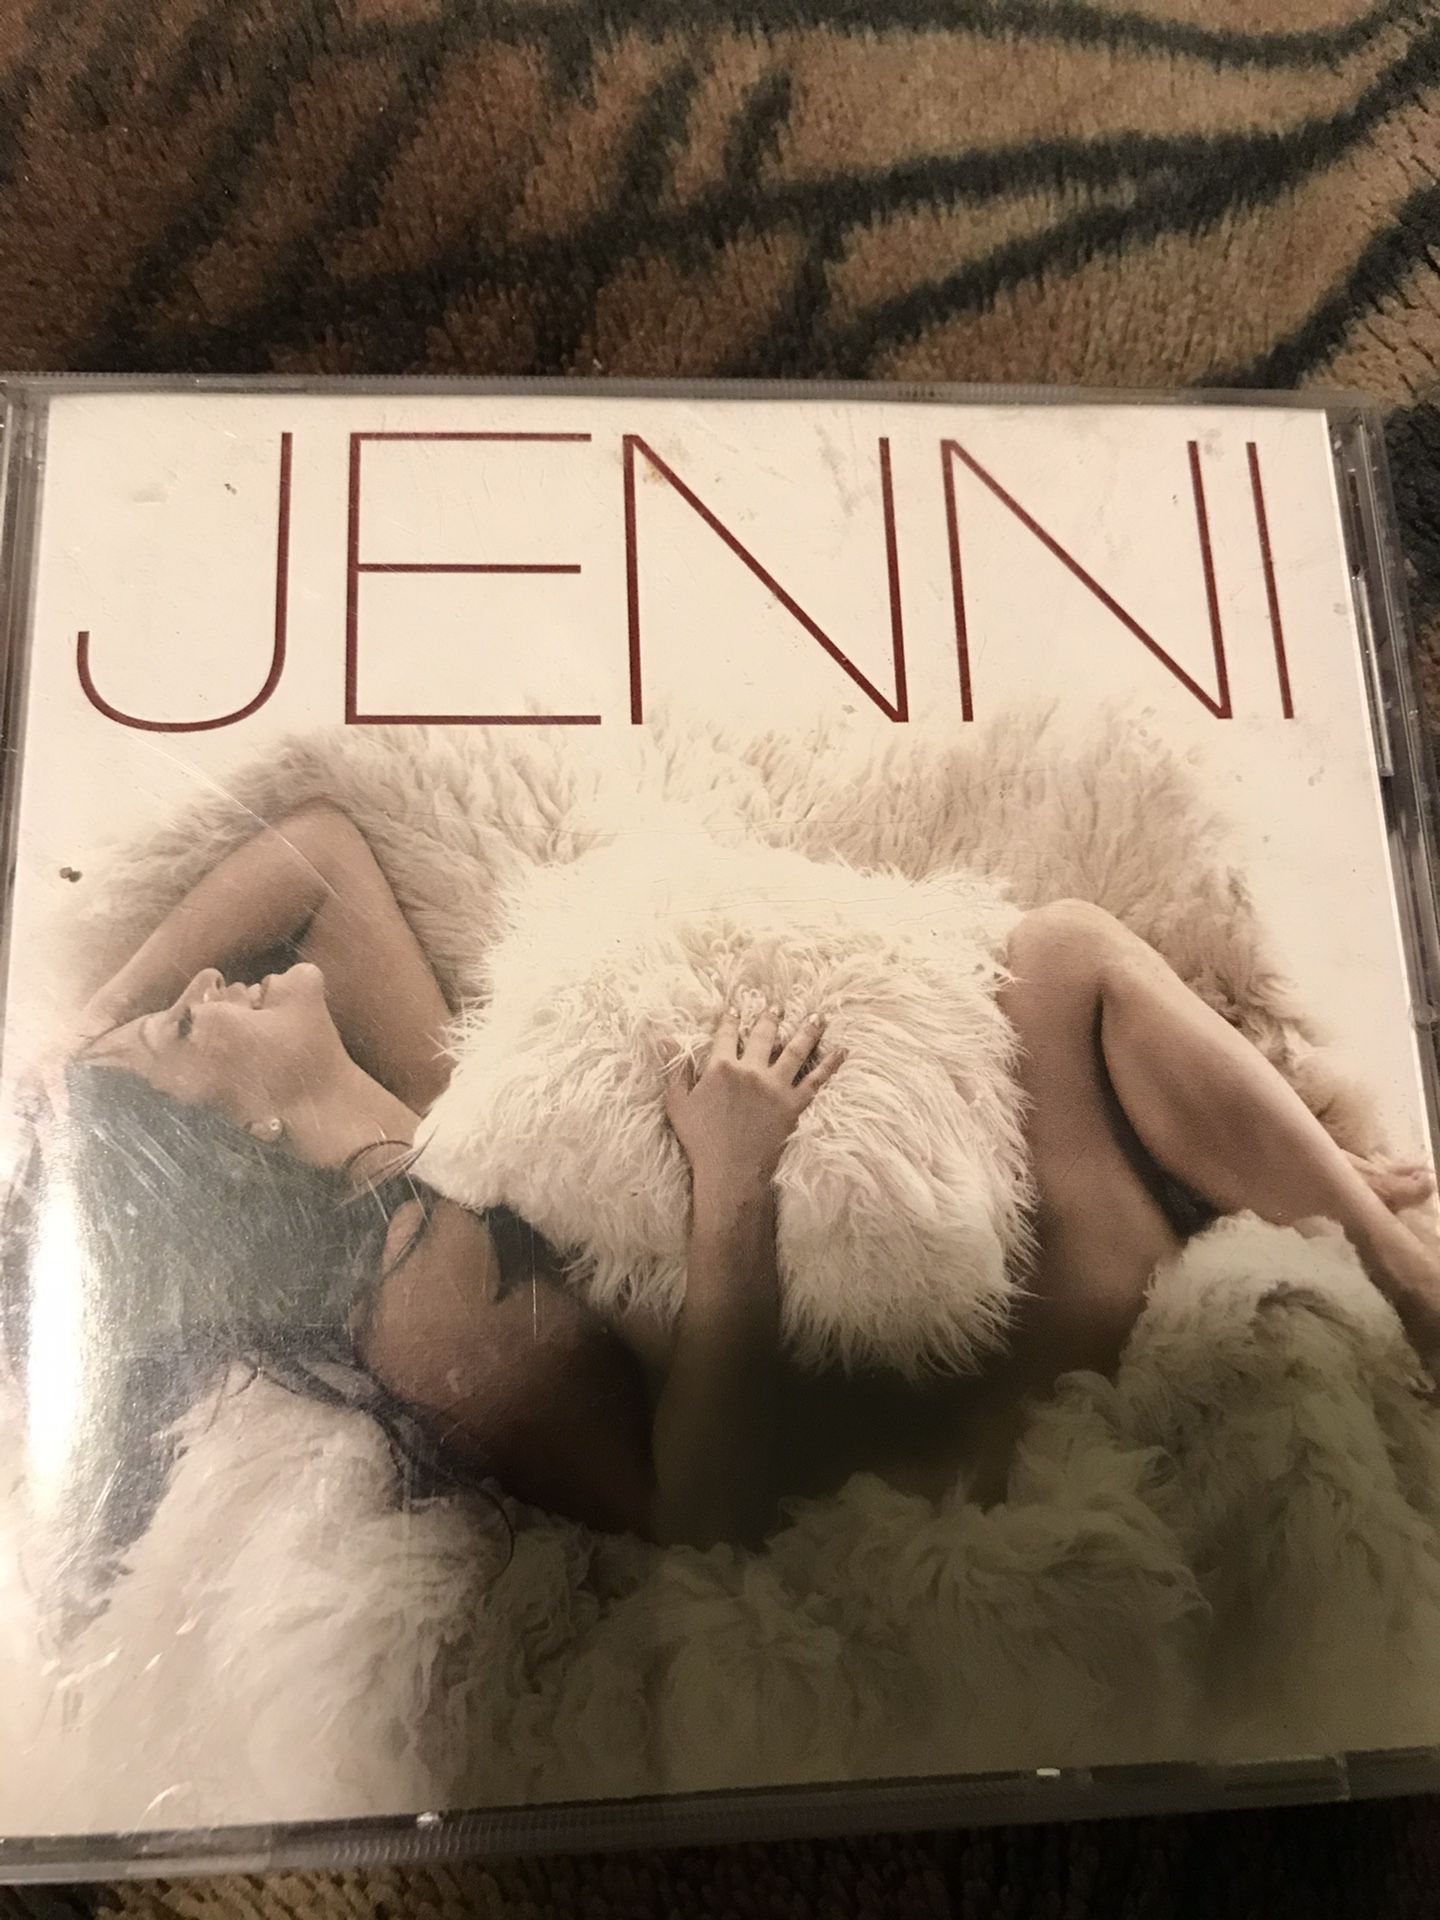 !! Jenni Rivera Spanish CD "JENNI"